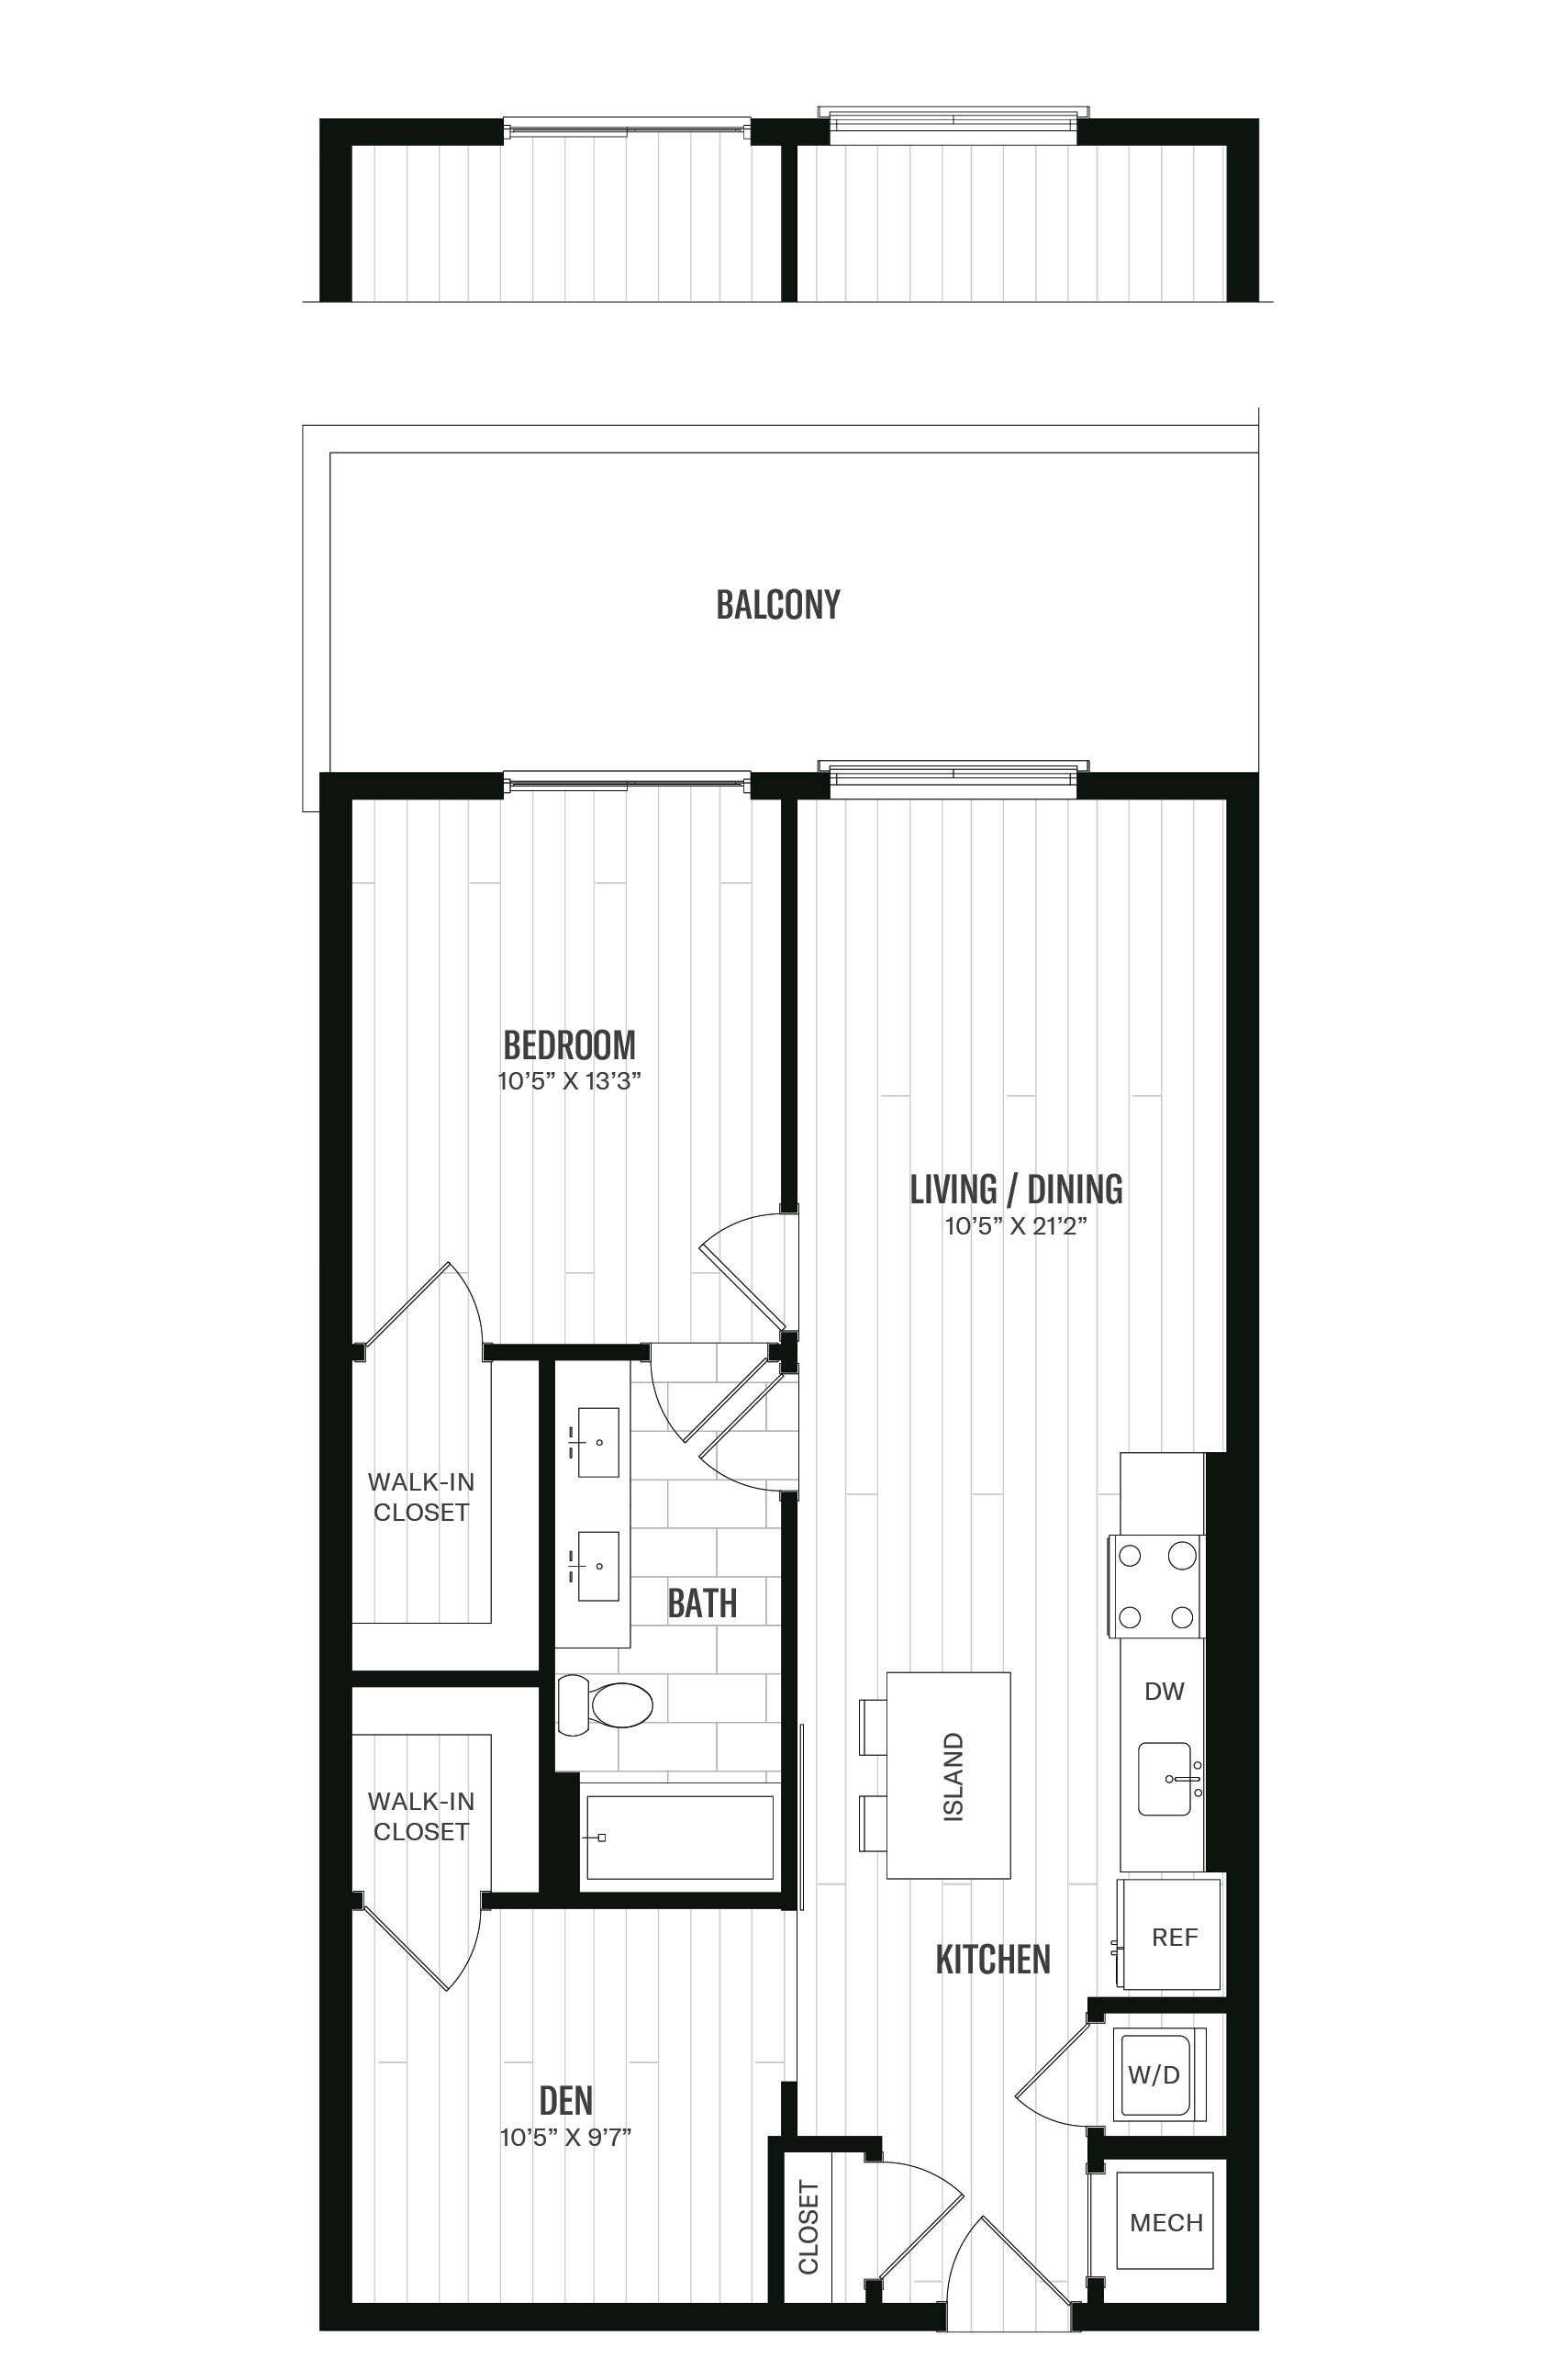 Floorplan image of unit 443